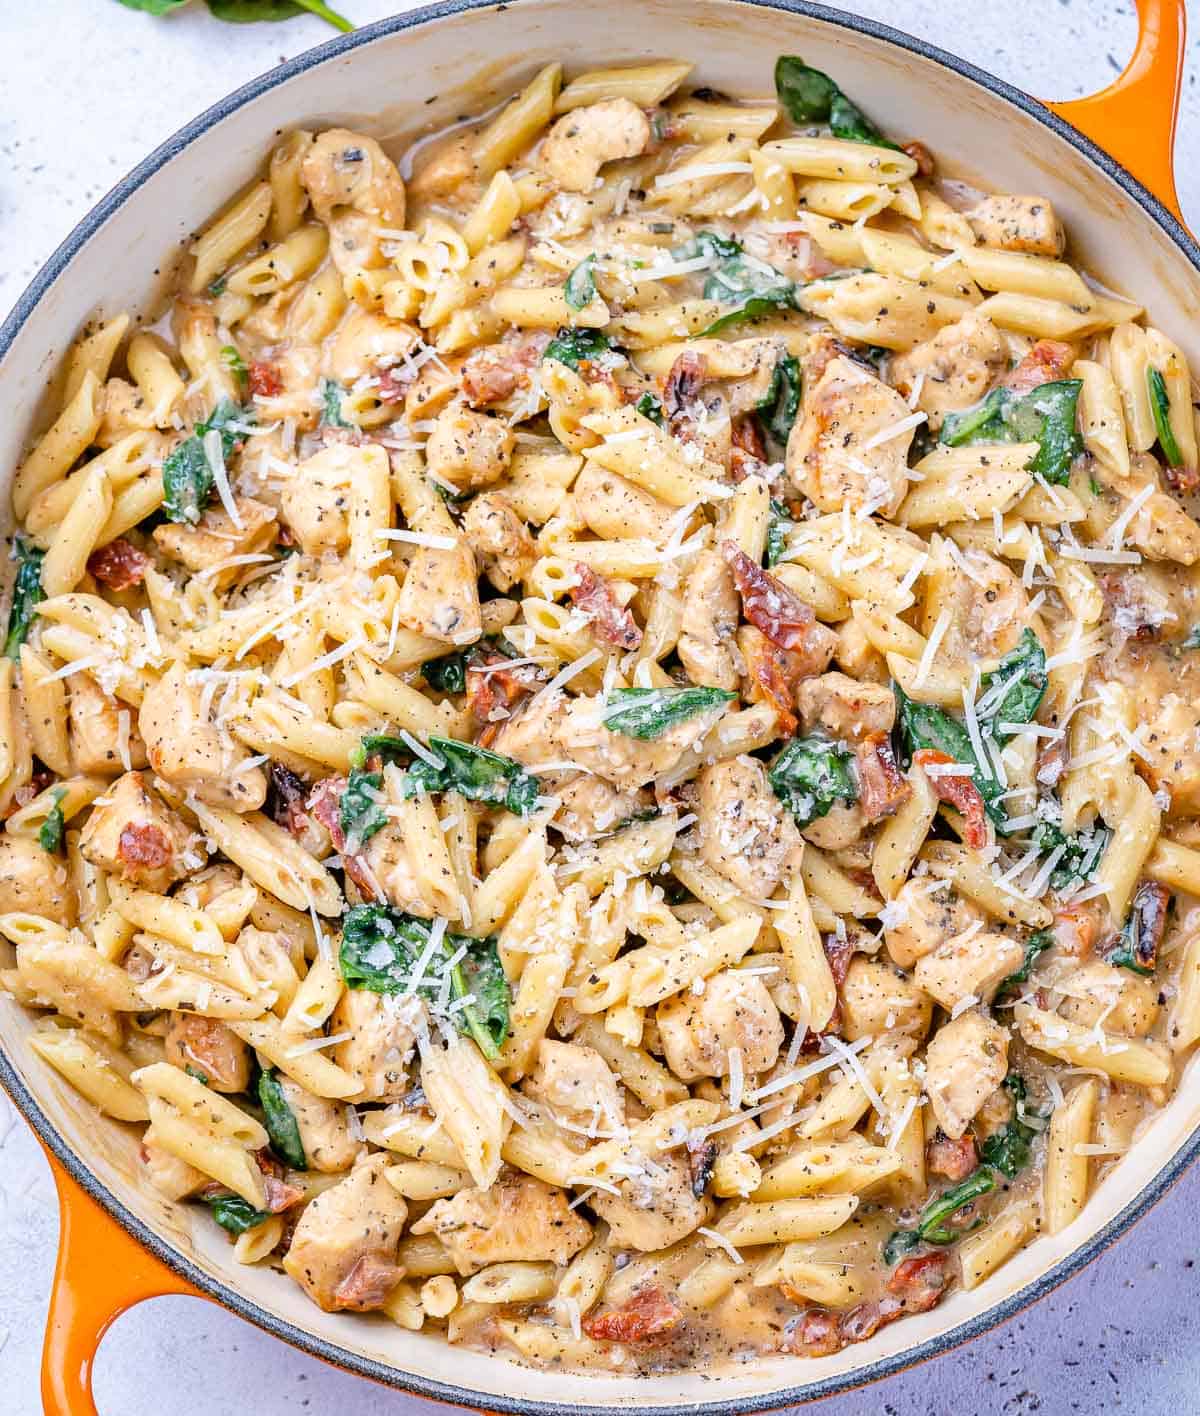 recipe to make with mozzarella and no pasta